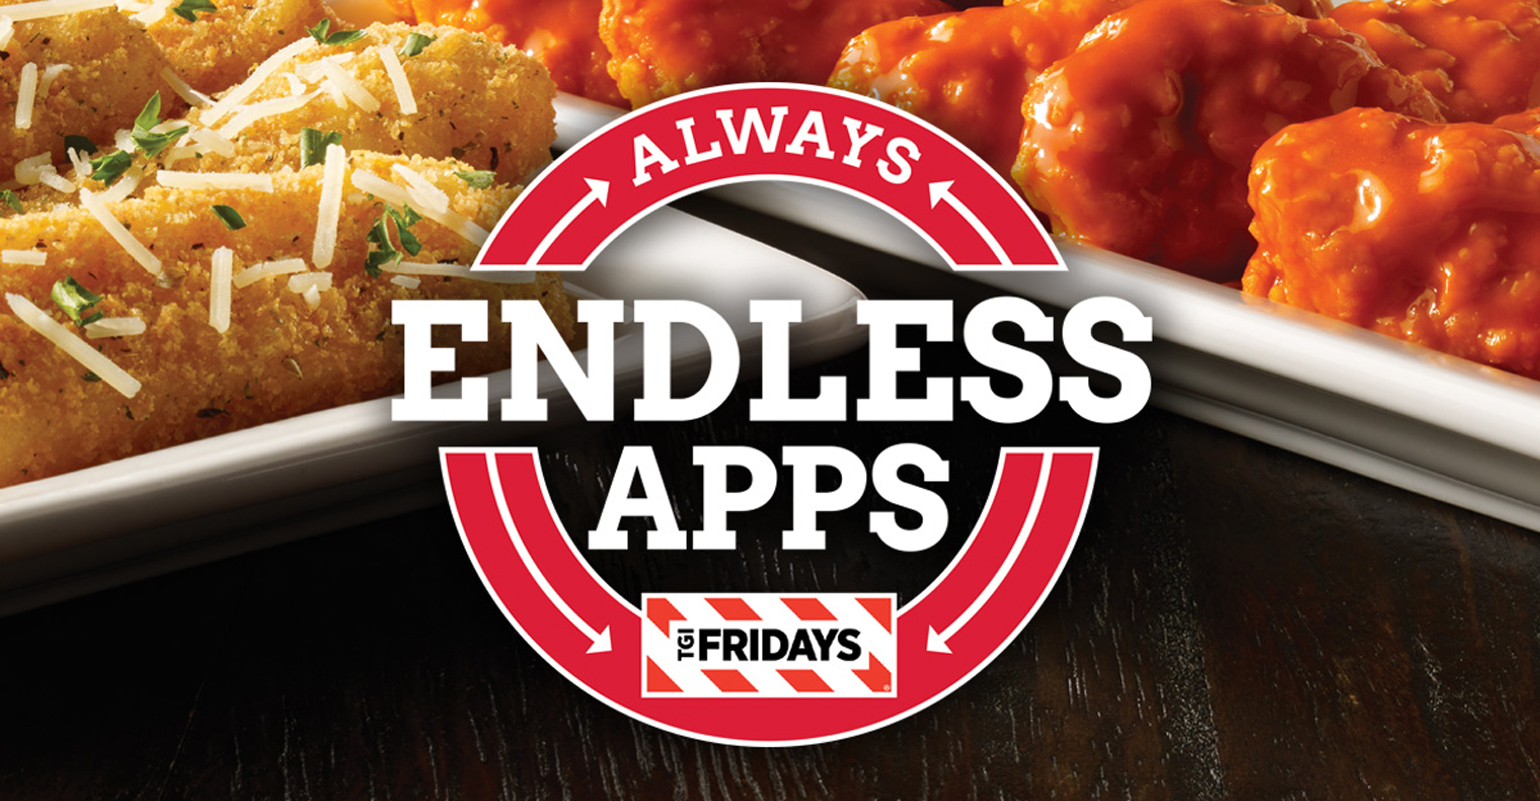 TGI Fridays makes Endless Apps permanent